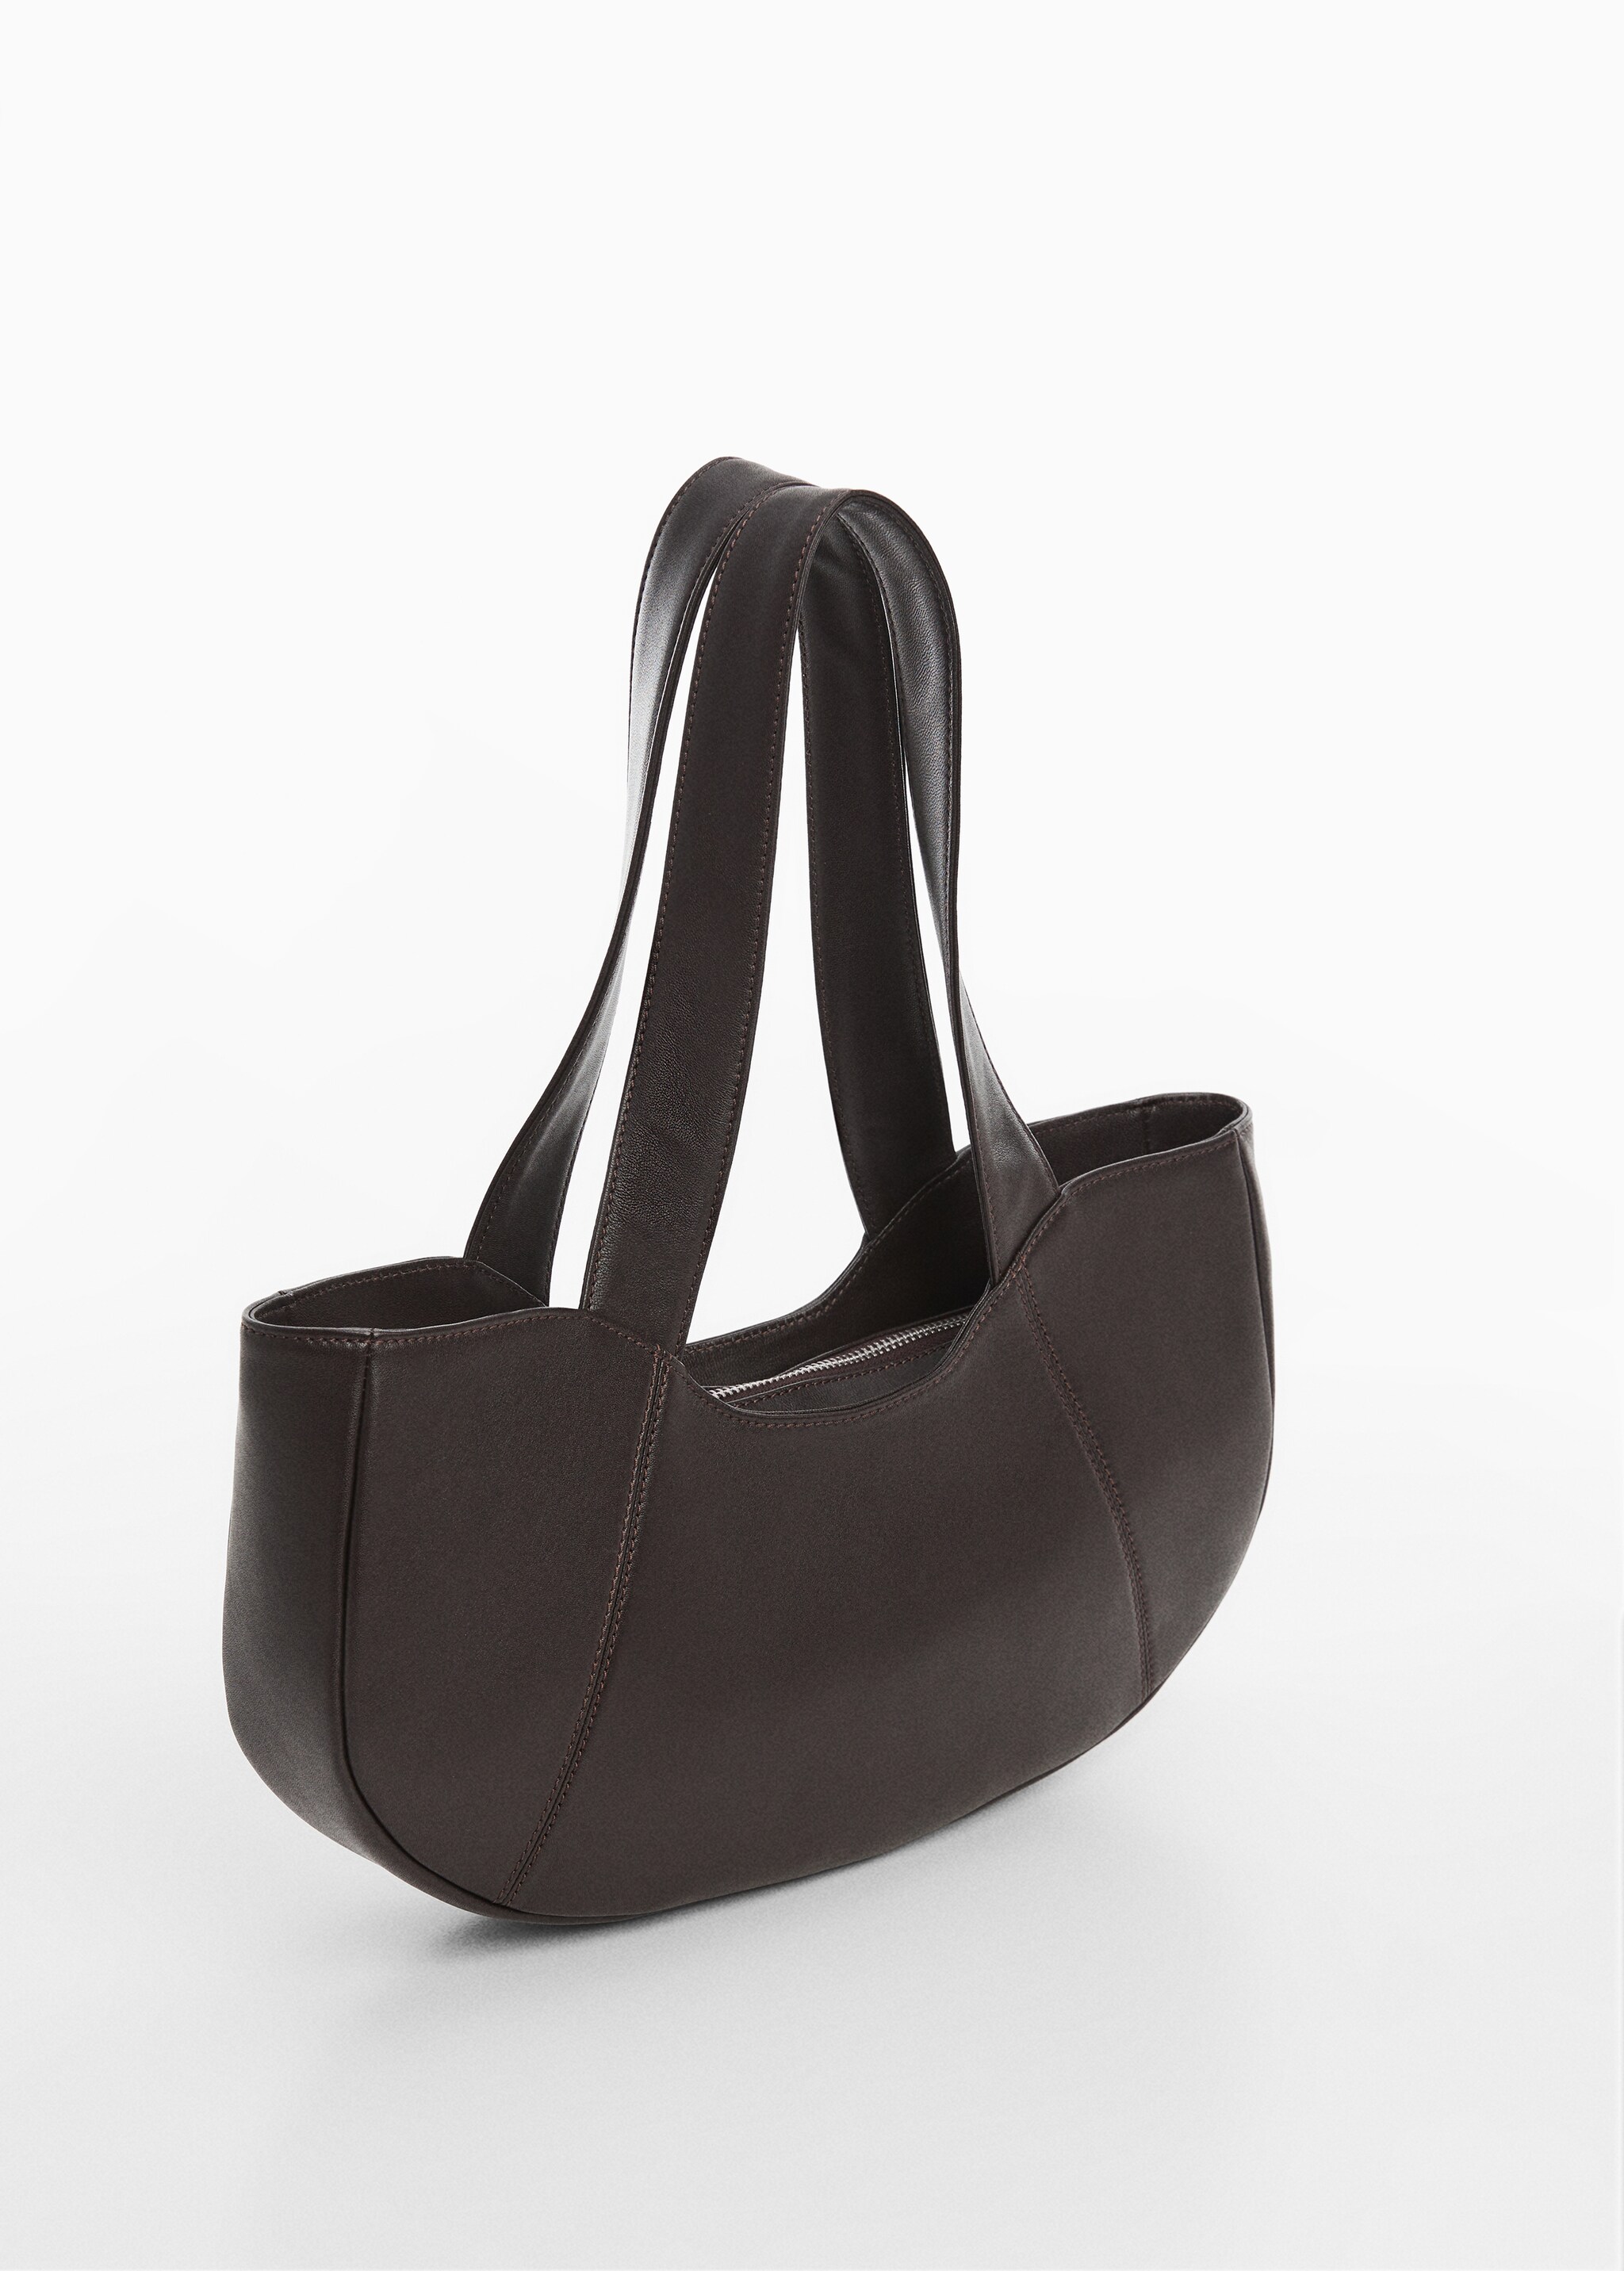 Leather shoulder bag - Medium plane